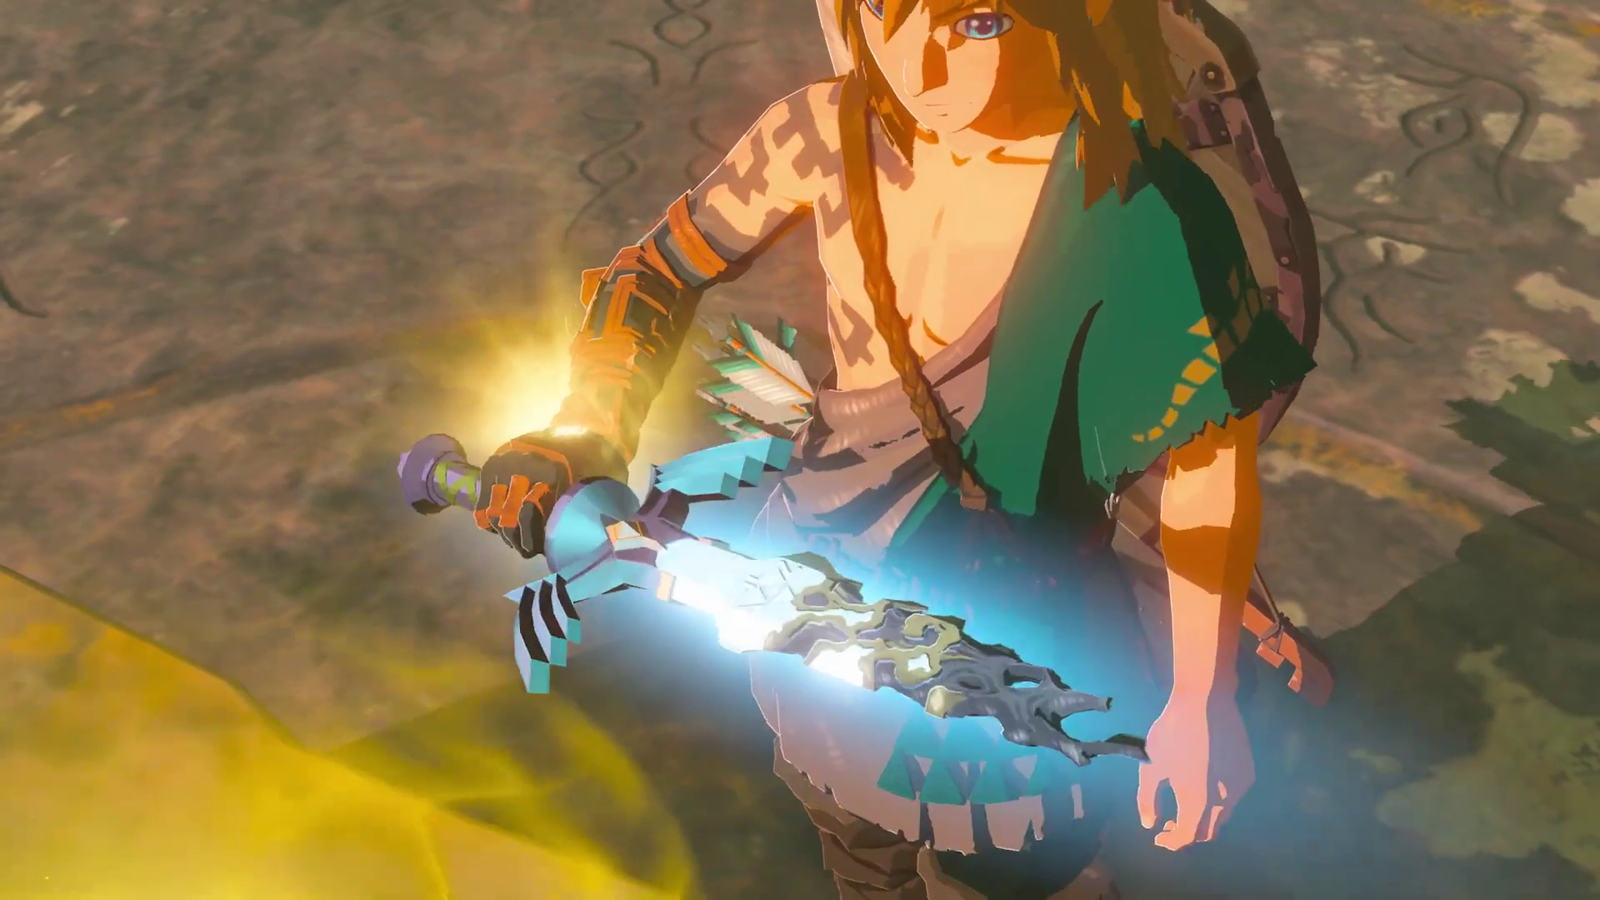 Zelda: Tears of the Kingdom anuncia un increíble amiibo exclusivo